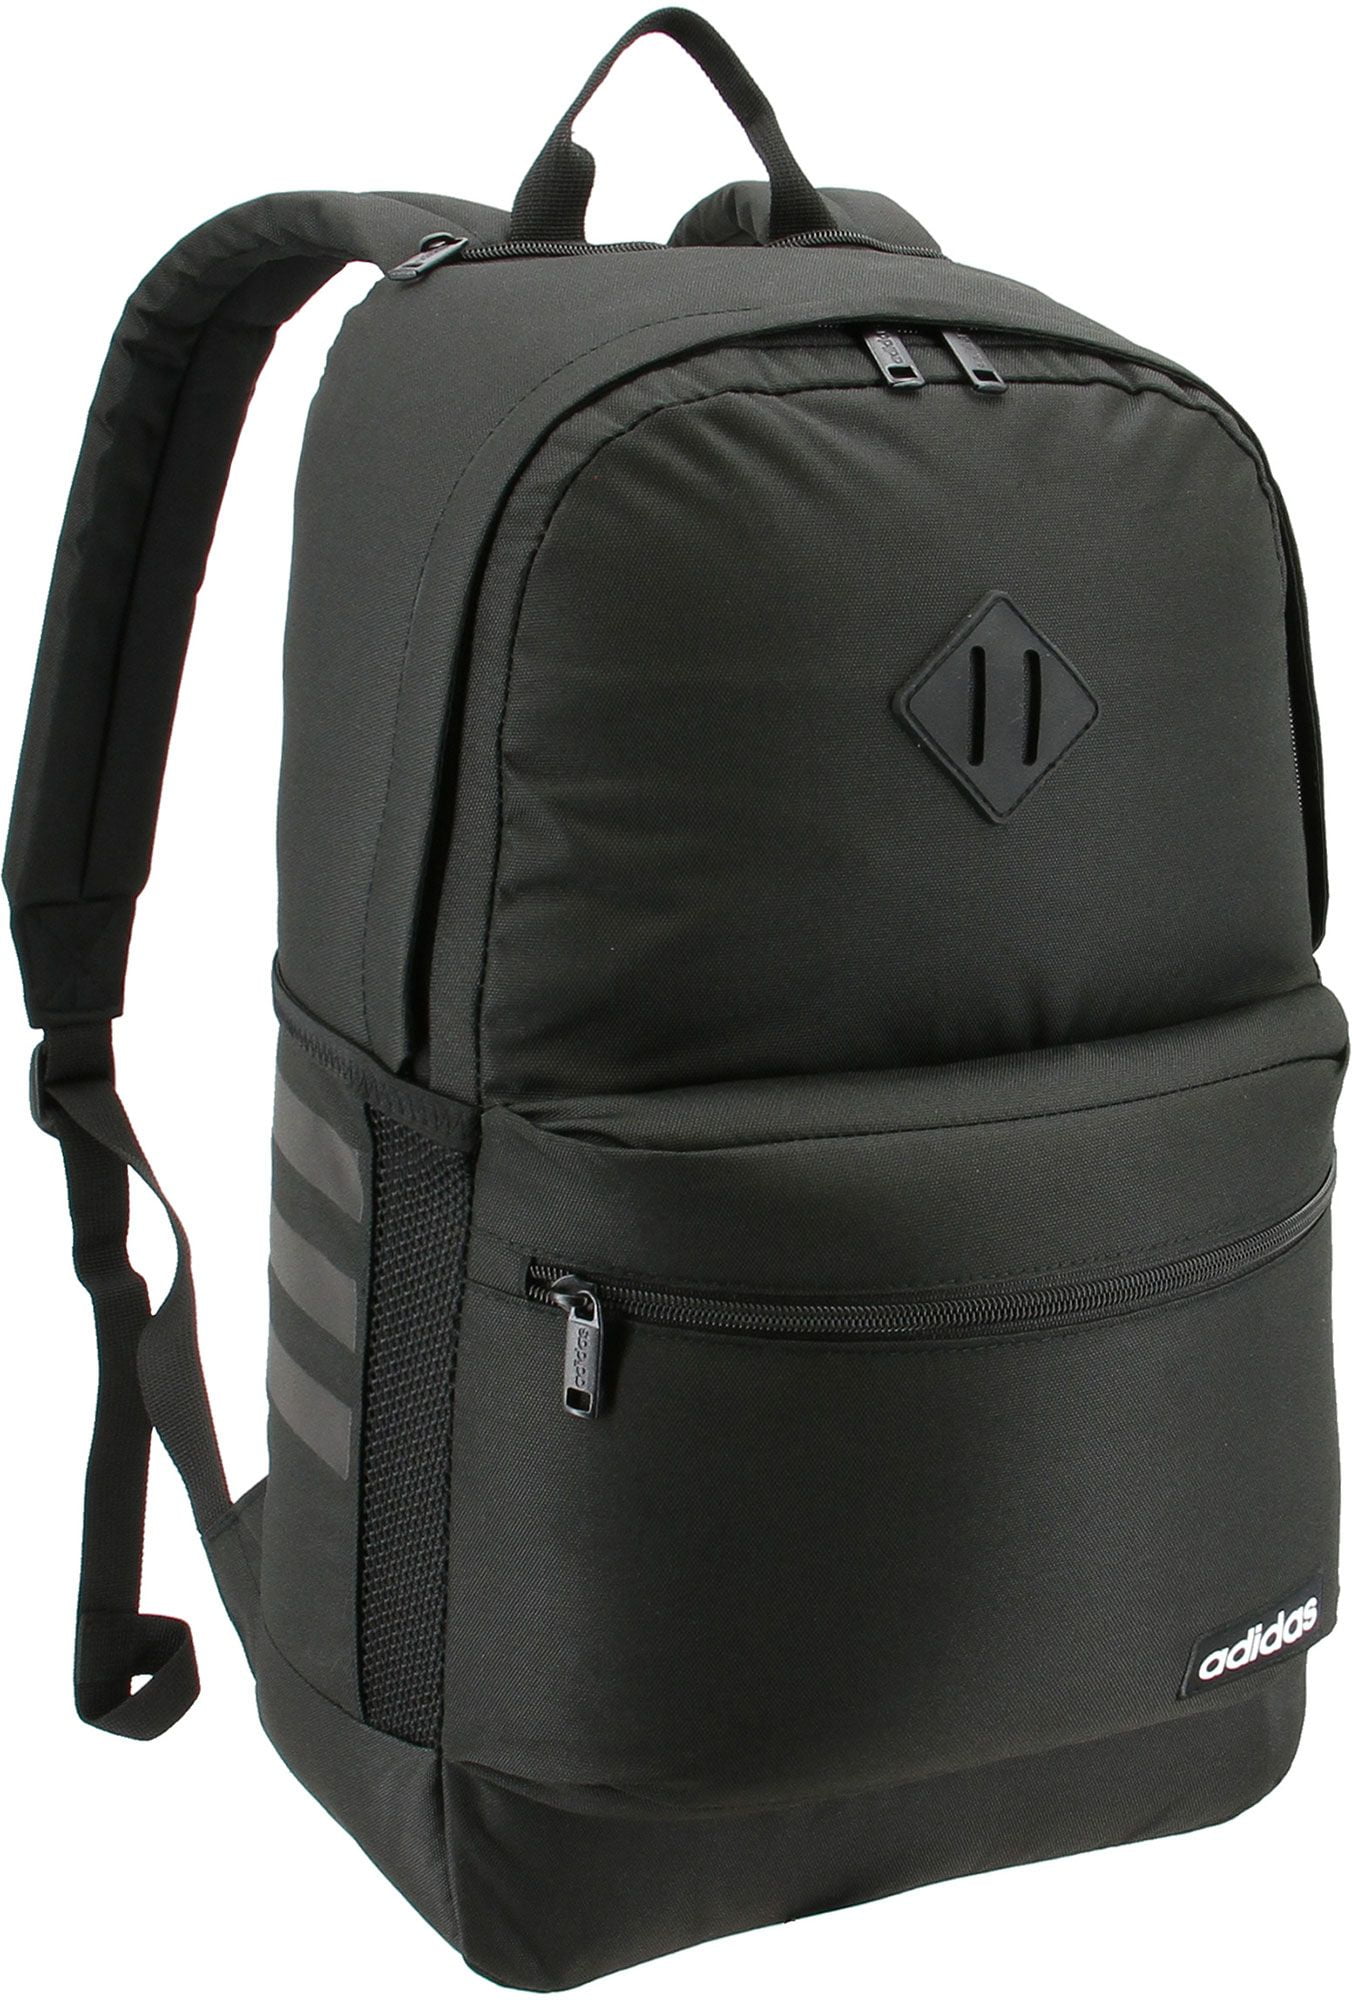 adidas classic 3s ii backpack black